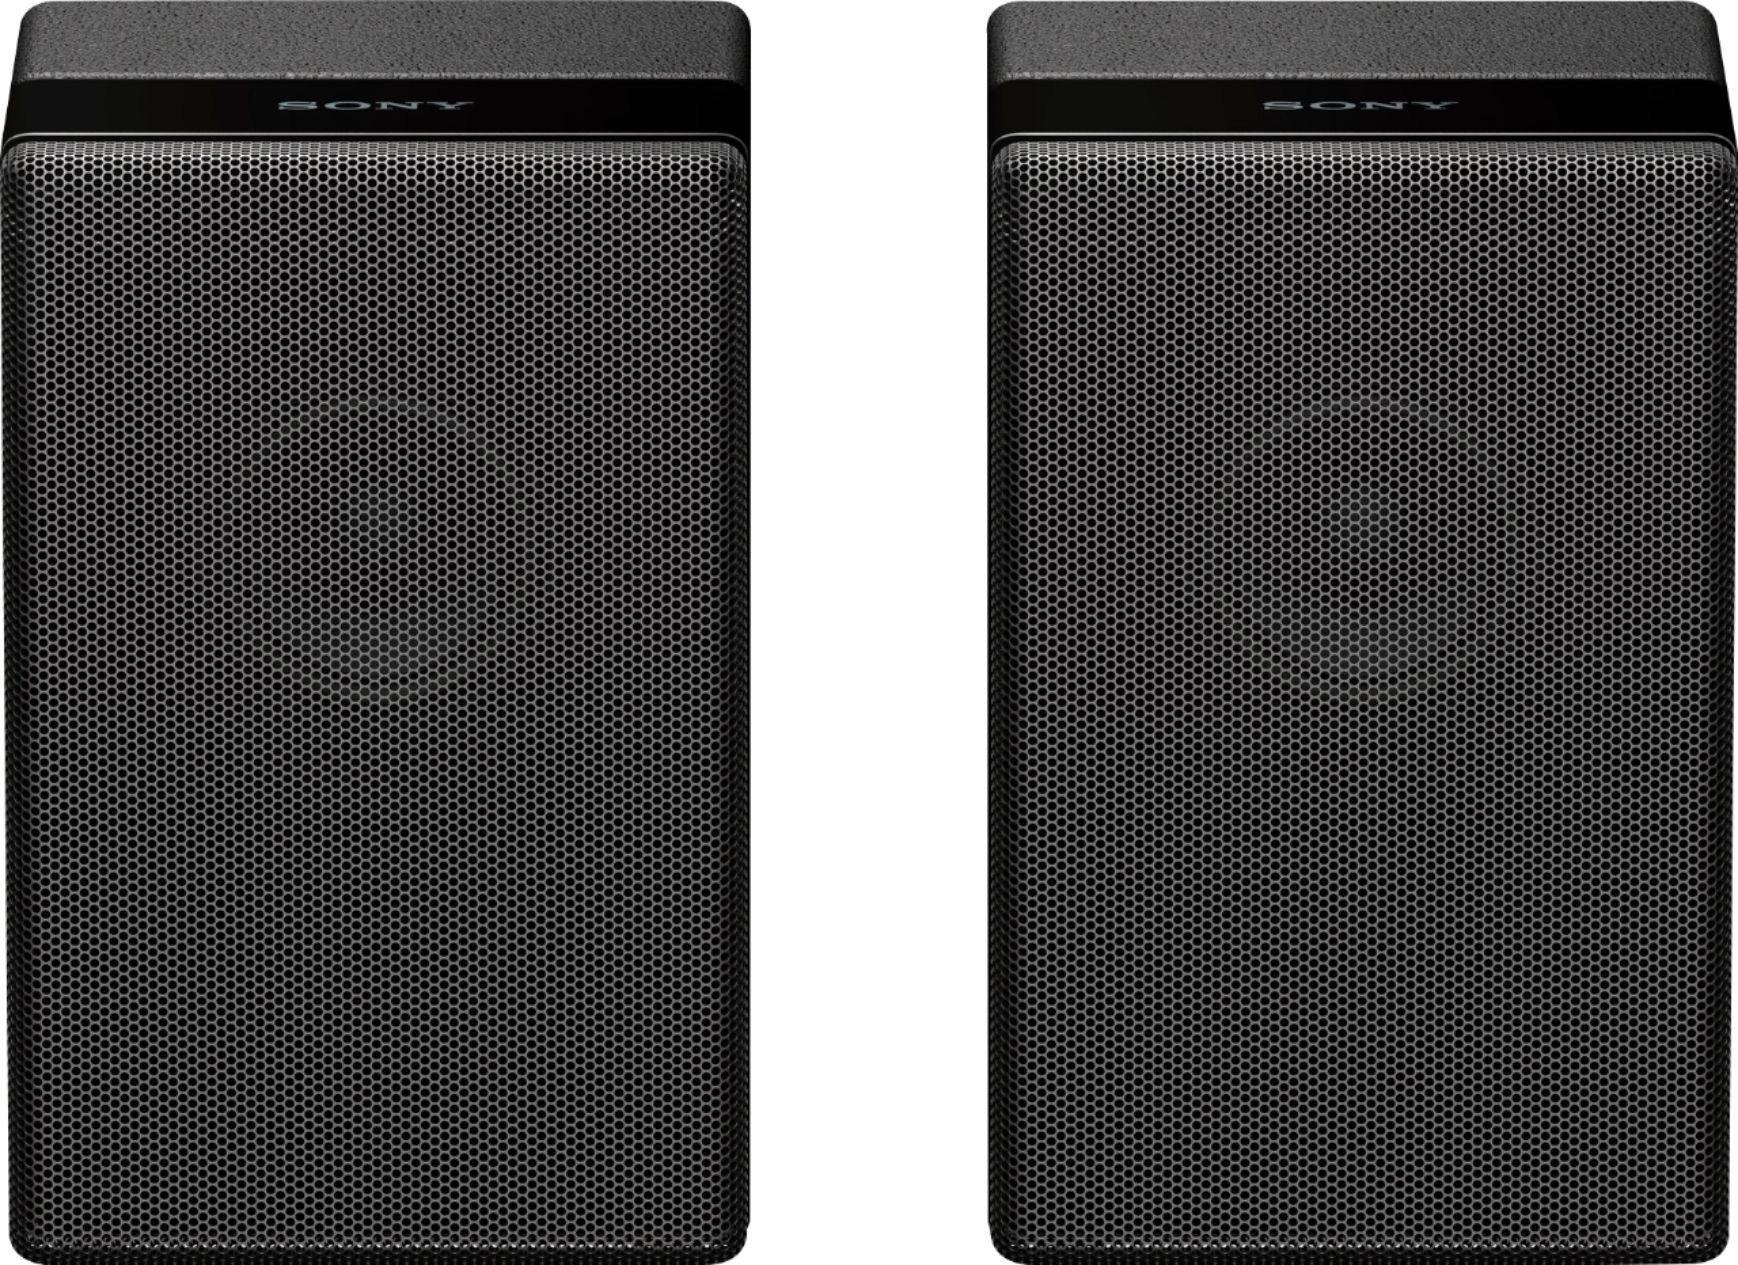 Sony – Wireless Rear Channel Speakers (Pair) – Black